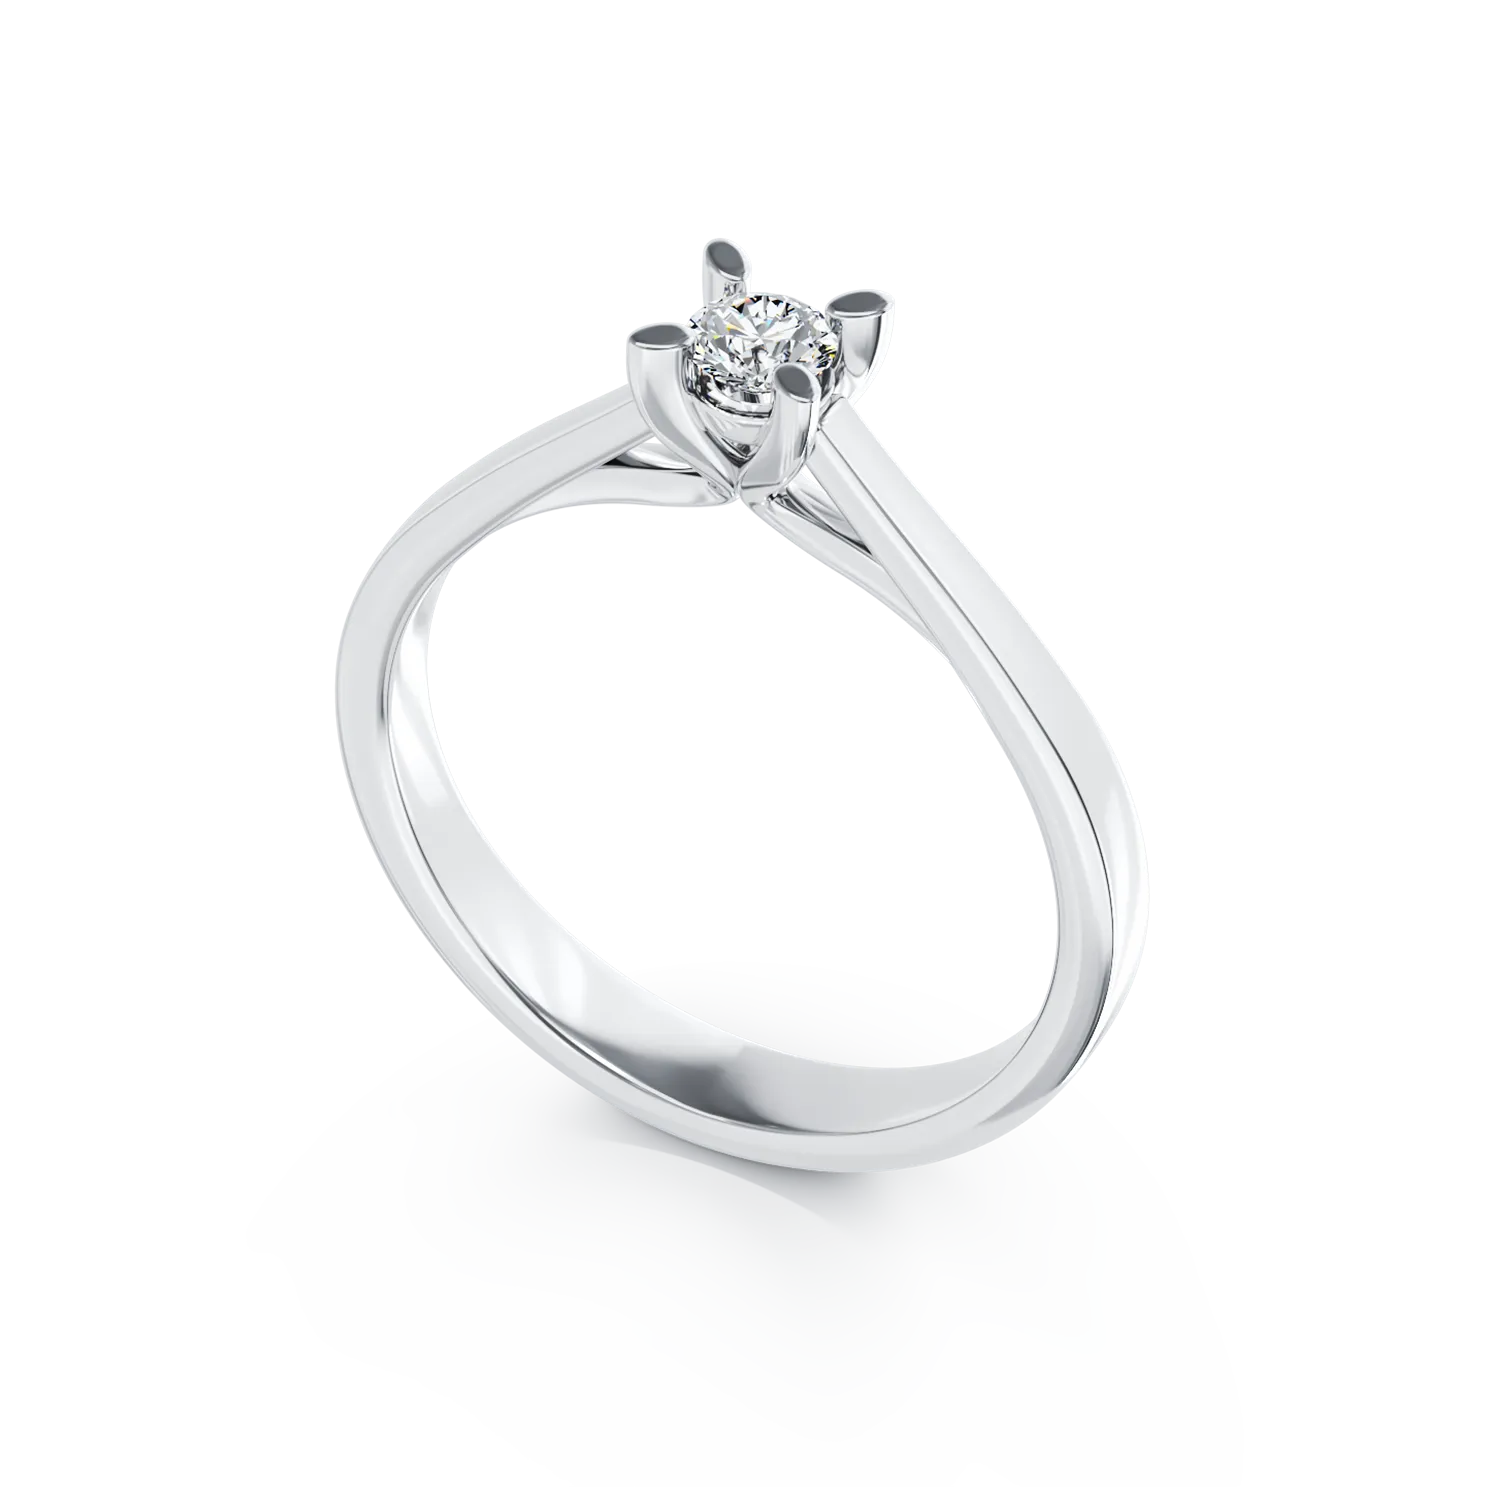 Inel de logodna din aur alb de 18K cu un diamant solitaire de 0.2ct